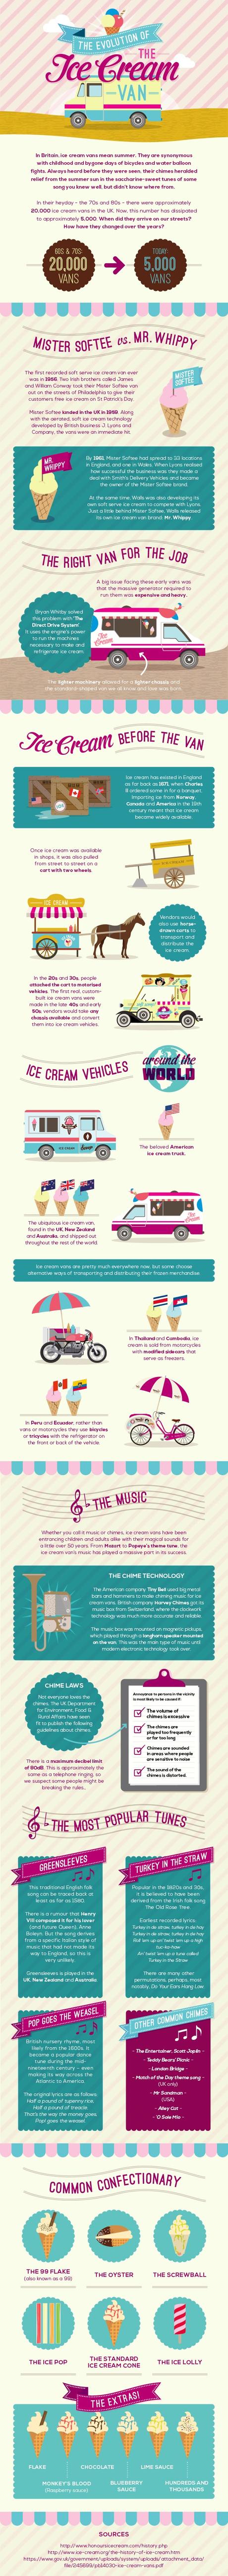 Evolution of the Ice Cream Van Infographic